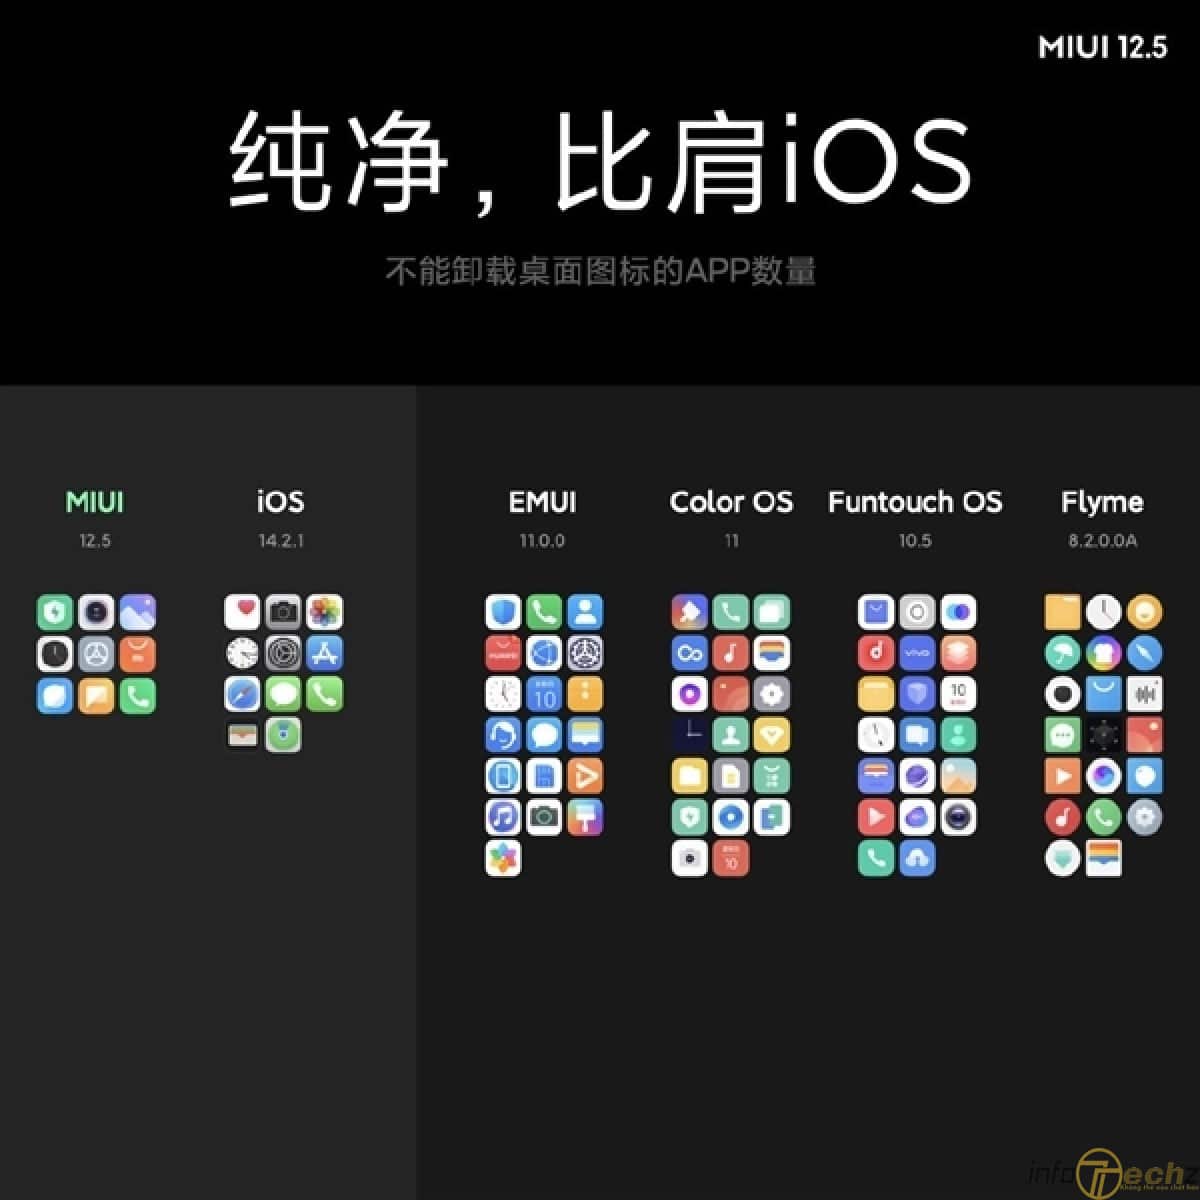 Xiaomi công bố MIUI 12.5 an toàn, nhanh hơn và giao diện rất đẹp